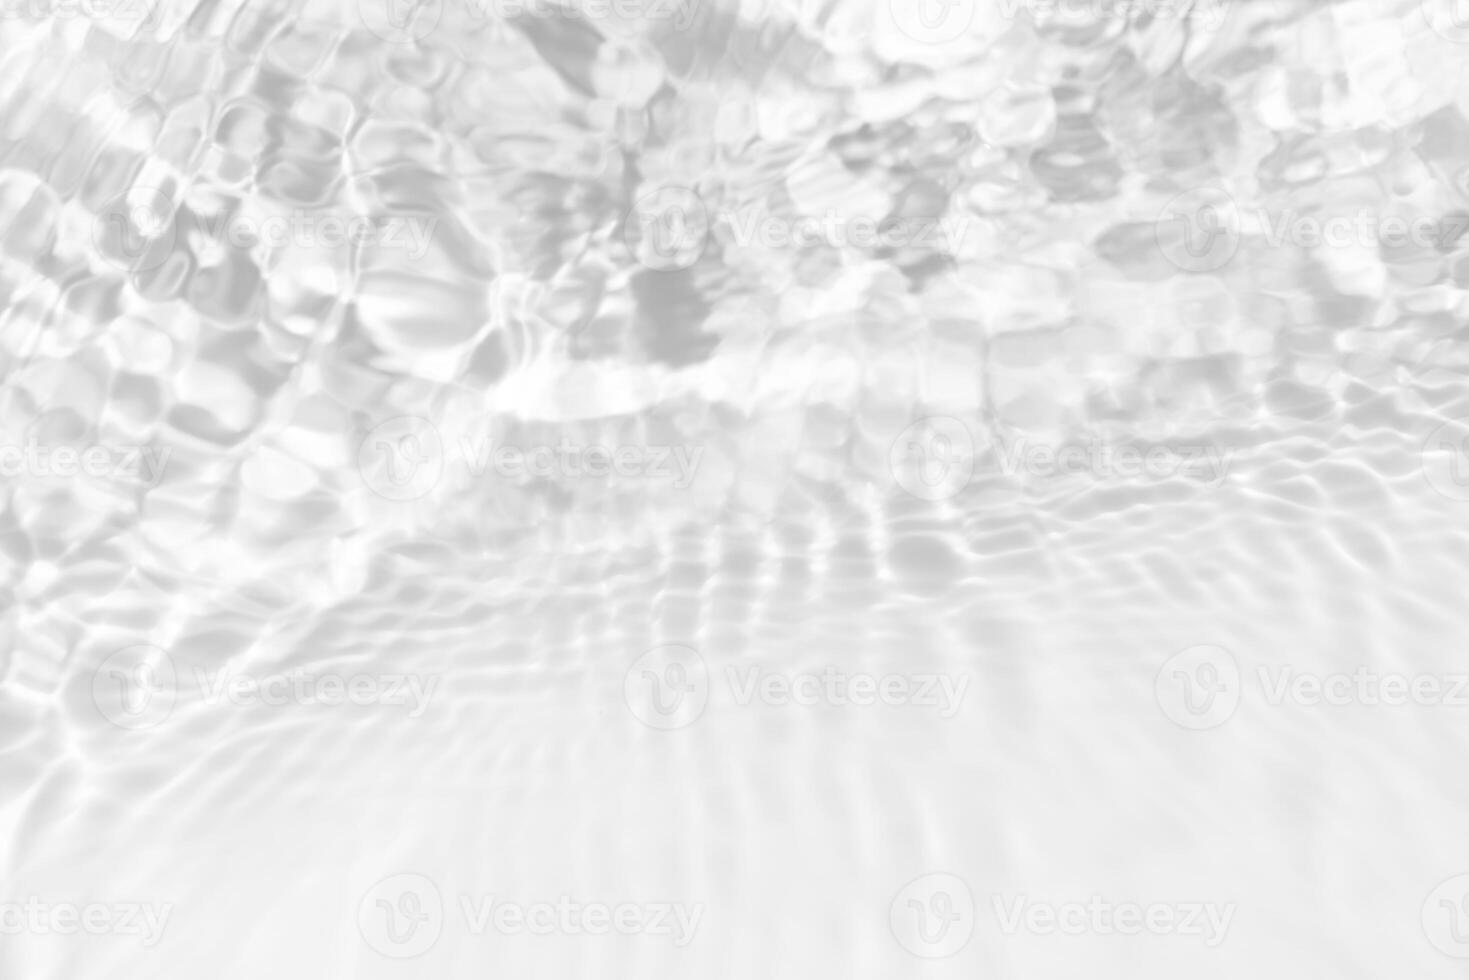 vit vatten med krusningar på de yta. defokusering suddig transparent vit färgad klar lugna vatten yta textur med stänk och bubblor. vatten vågor med lysande mönster textur bakgrund. foto